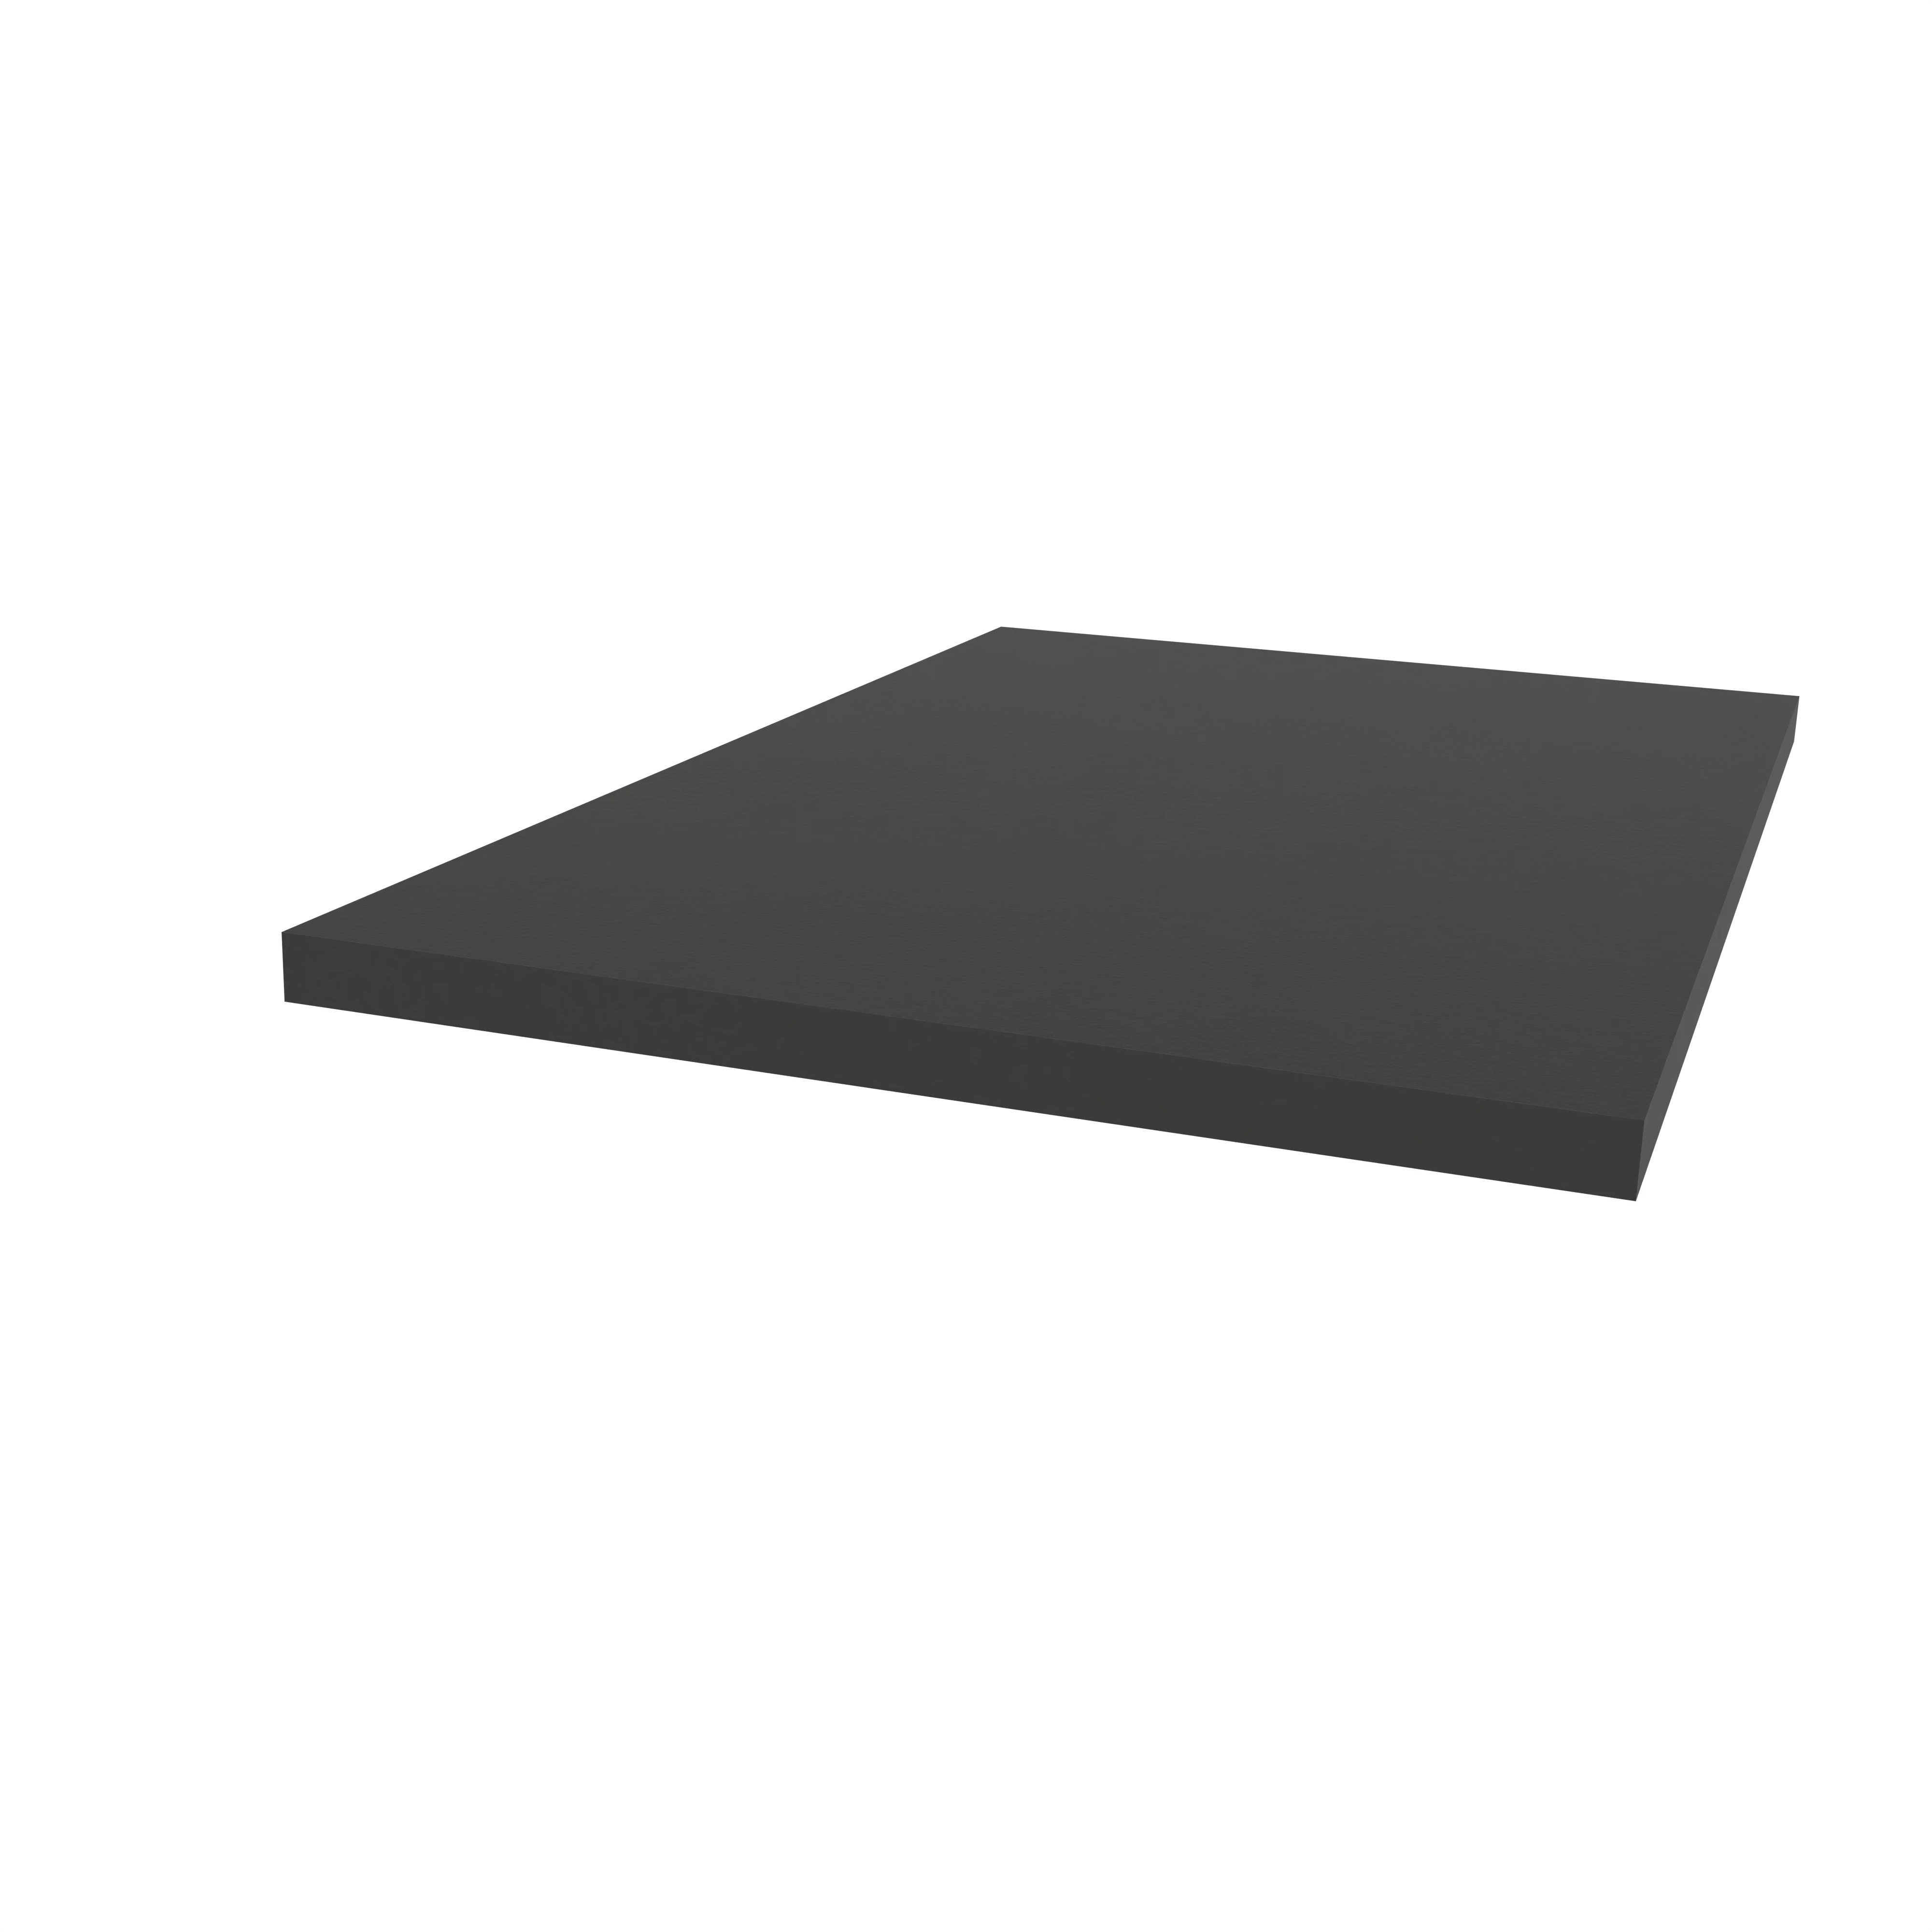 Moosgummidichtung vierkant | 50 mm Breite | Farbe: schwarz